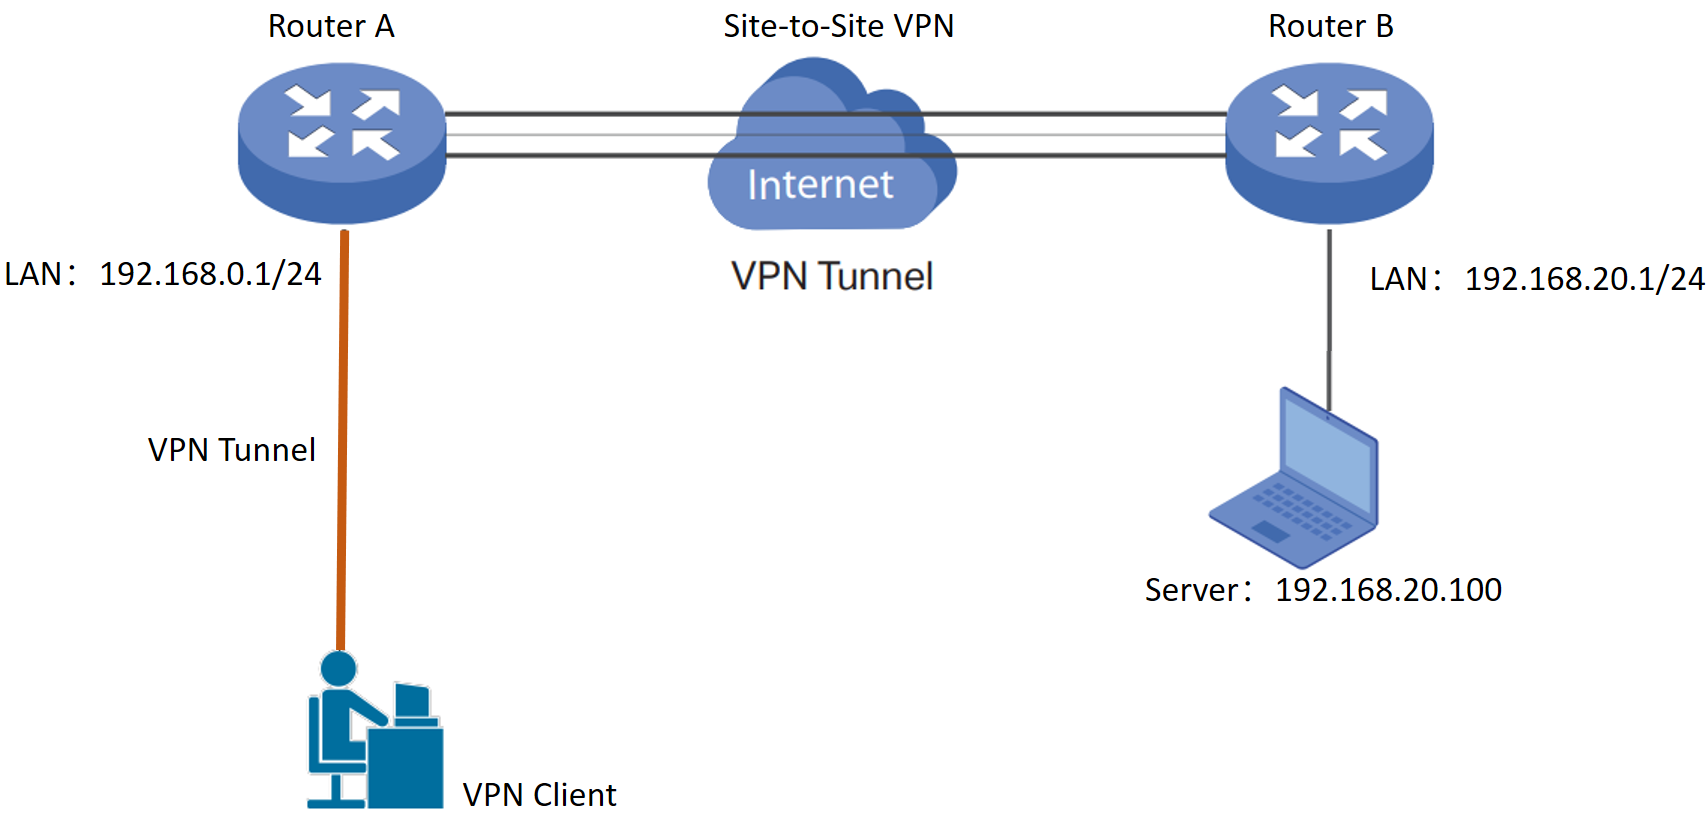 Verifique se as configurações da VPN estão corretas.
Verifique se você está usando o protocolo de conexão correto (por exemplo, OpenVPN, L2TP, PPTP).